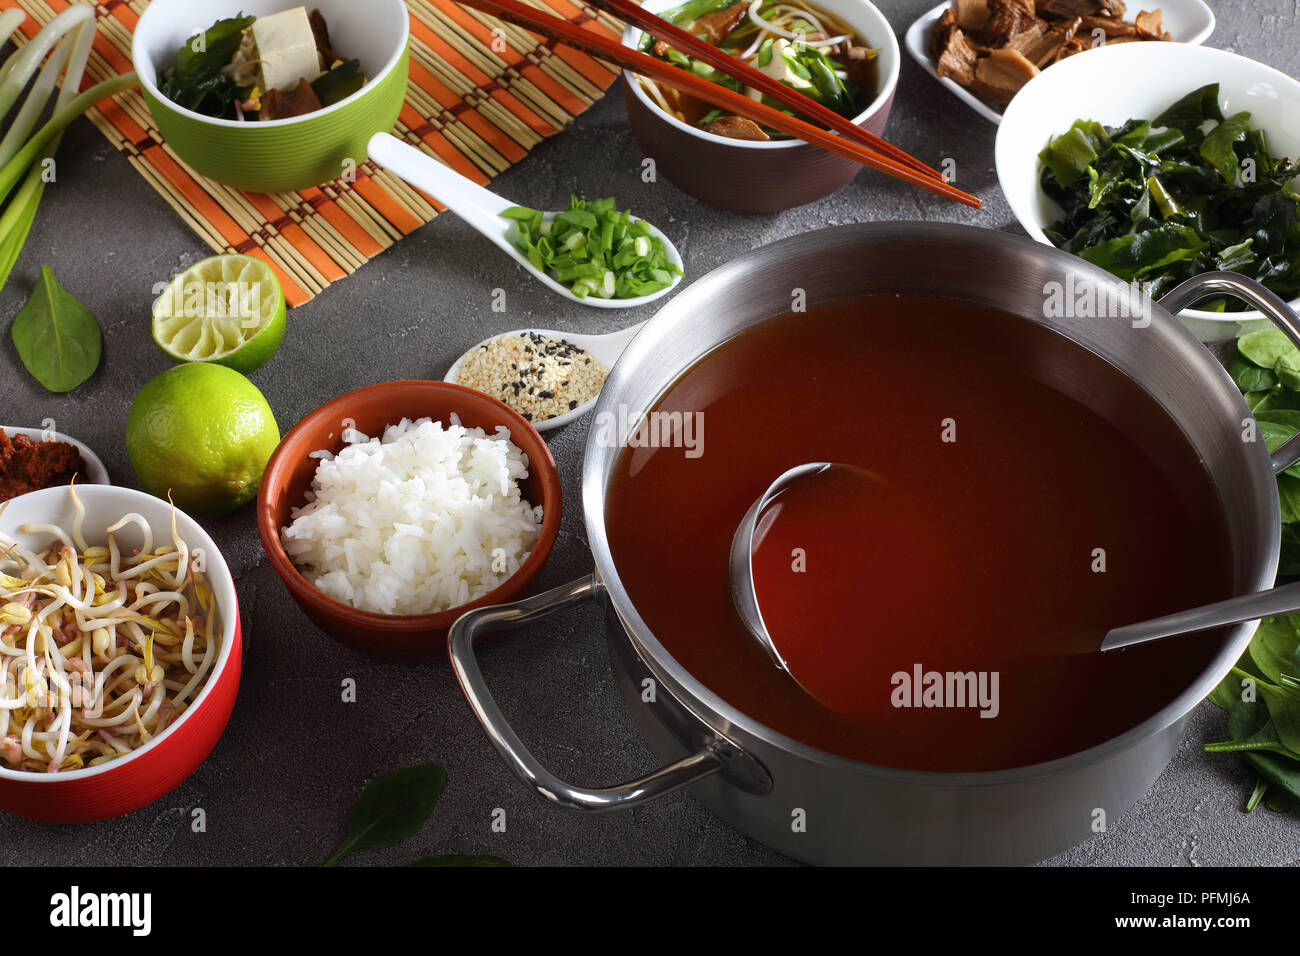 La soupe miso dans un bol avec des baguettes. Ingrédients sur table béton - le tofu, le miso, pâte d'algue wakame, le riz, les champignons shiitake, les germes, les verts et Banque D'Images